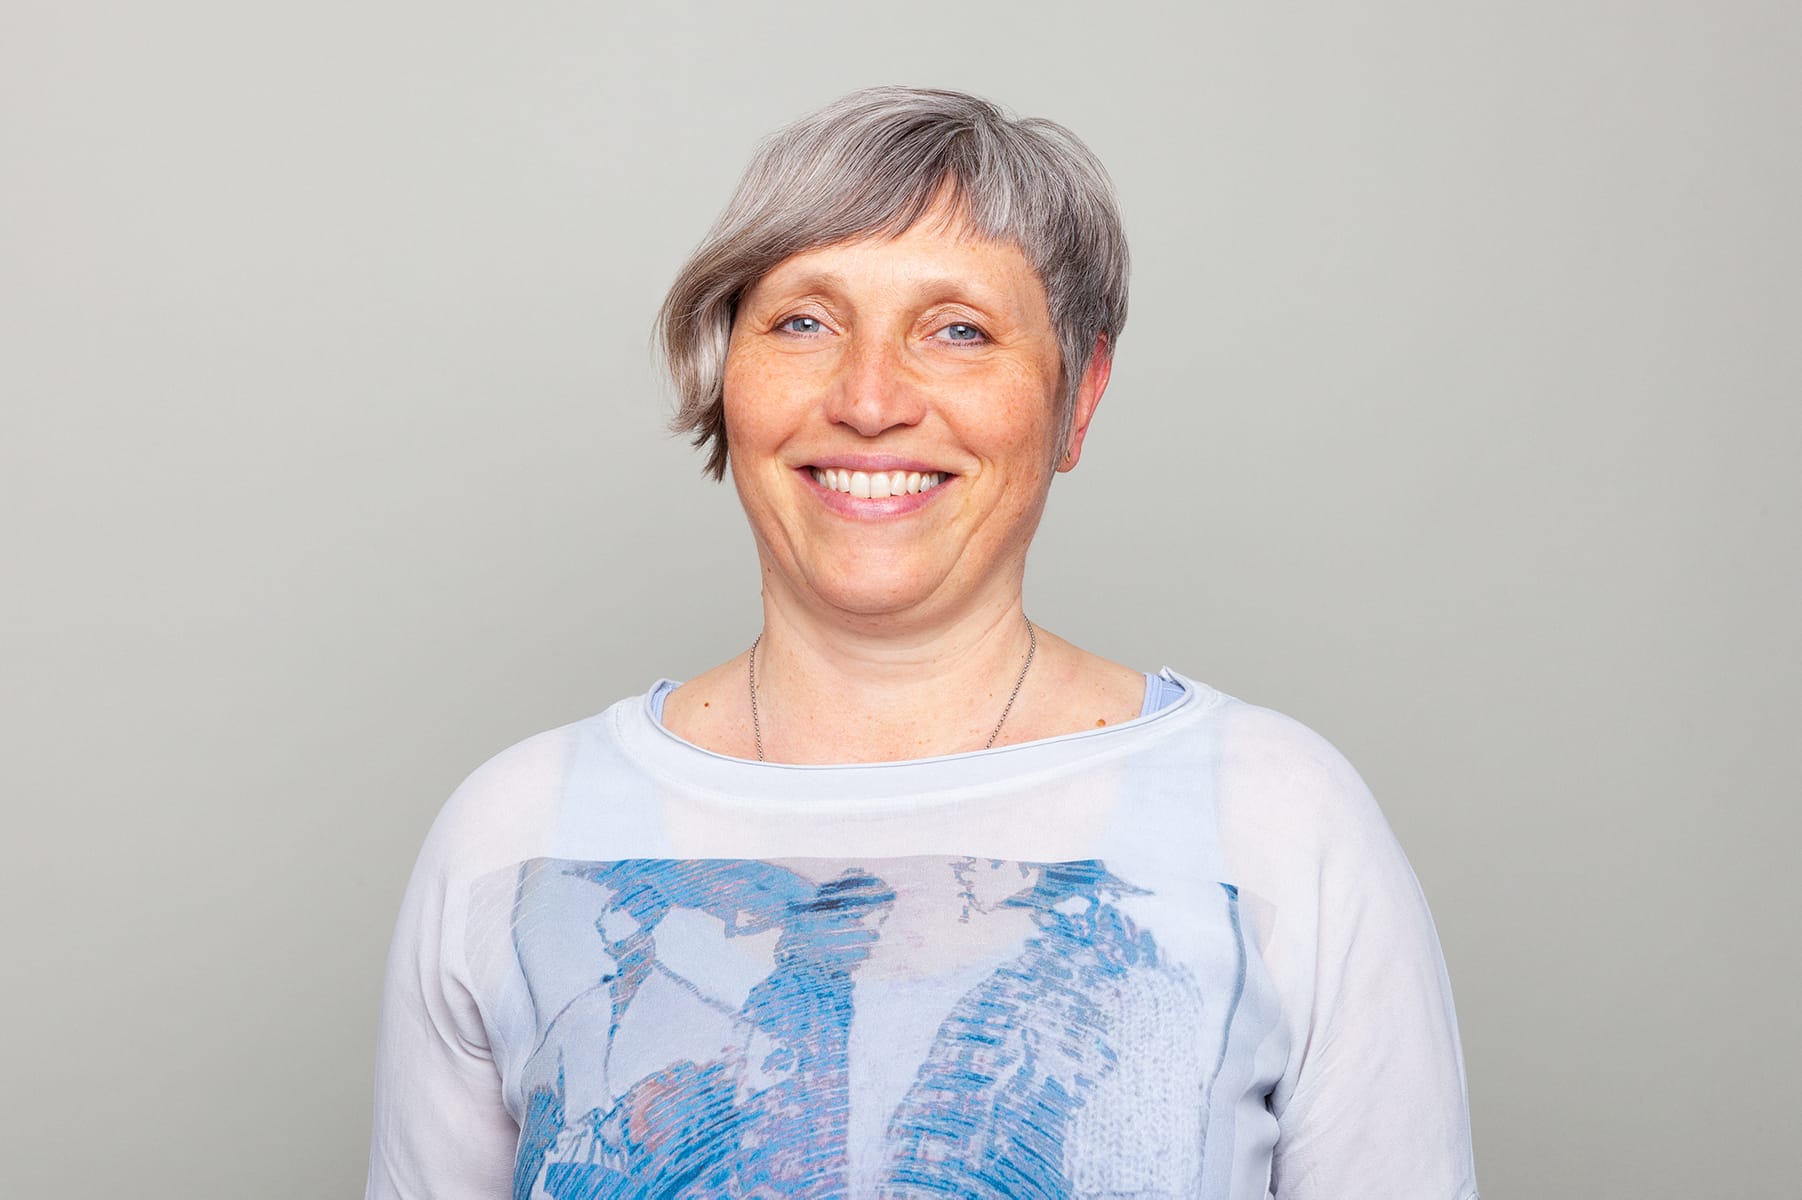 Susanne Ernst – Field Management & Organization